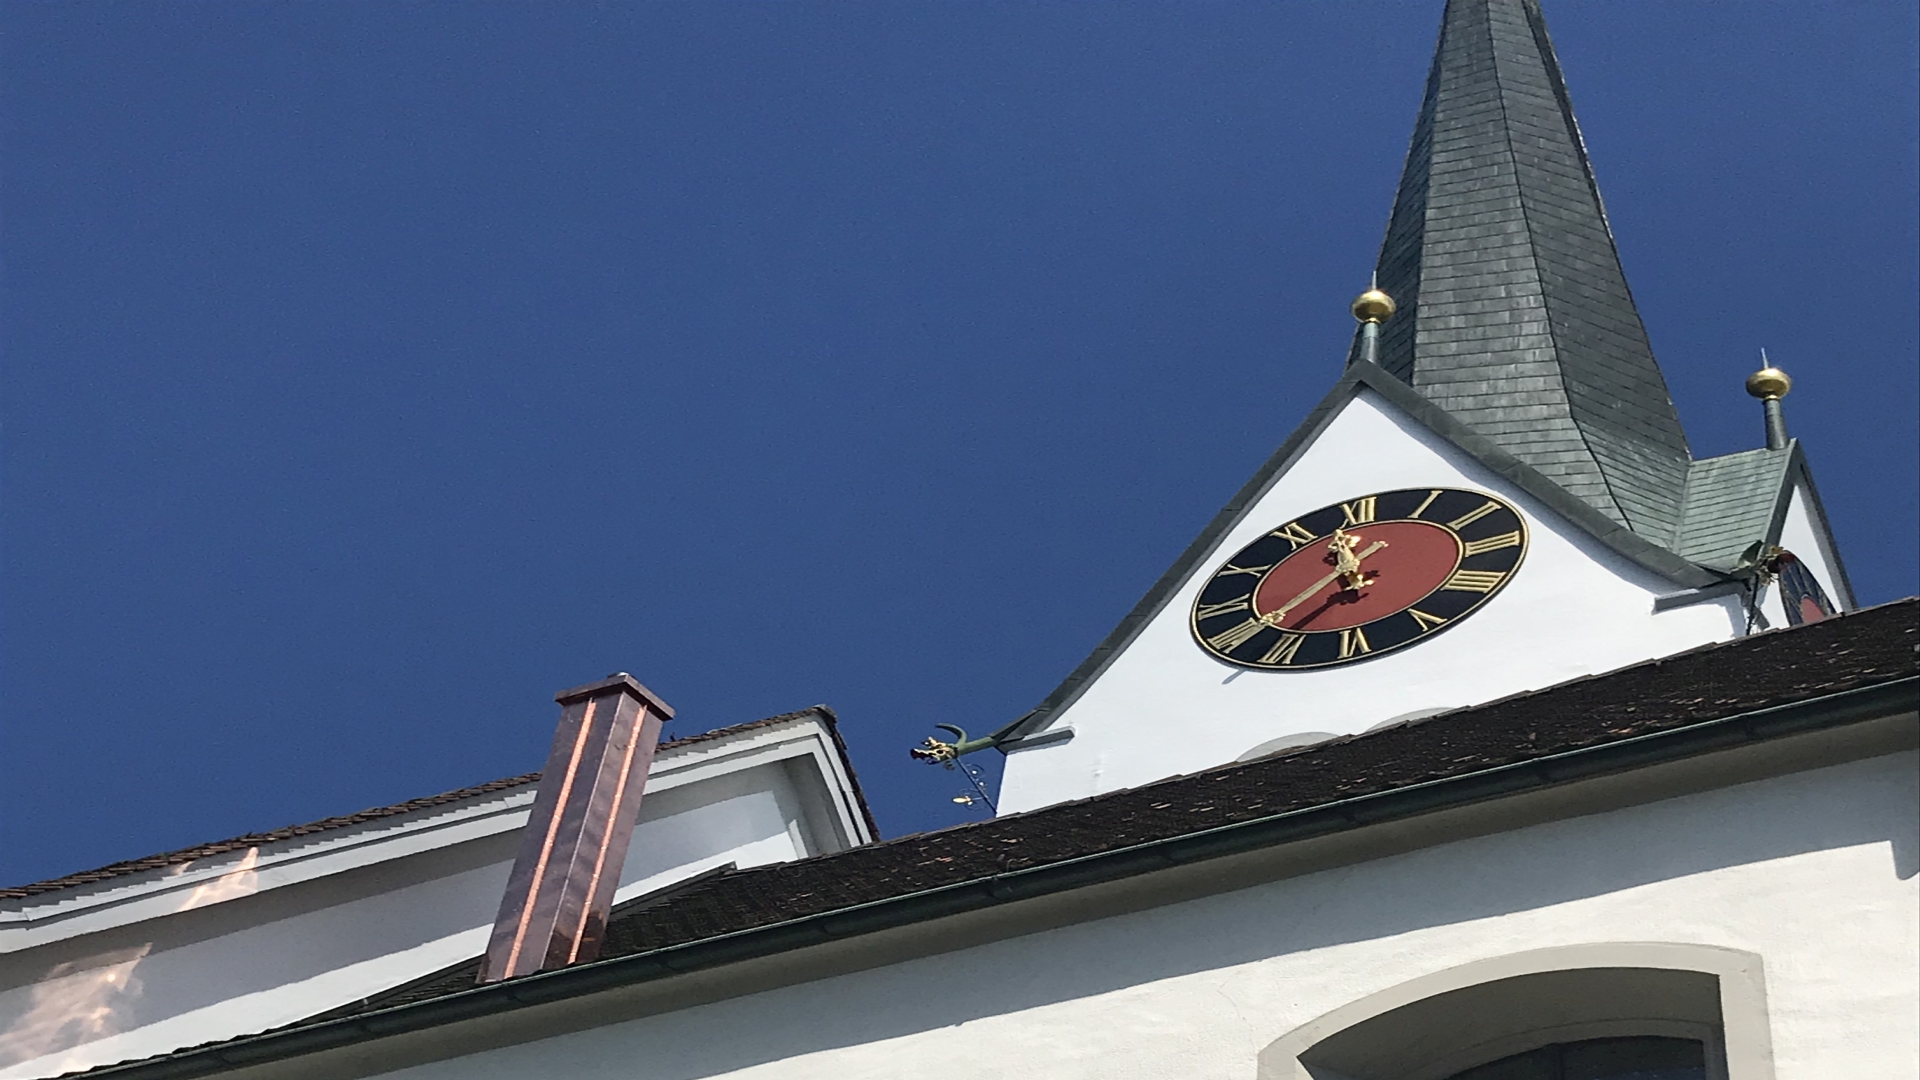 Pfarrkirche St. Goar, Kirchbühlstr. 10, 5630 Muri